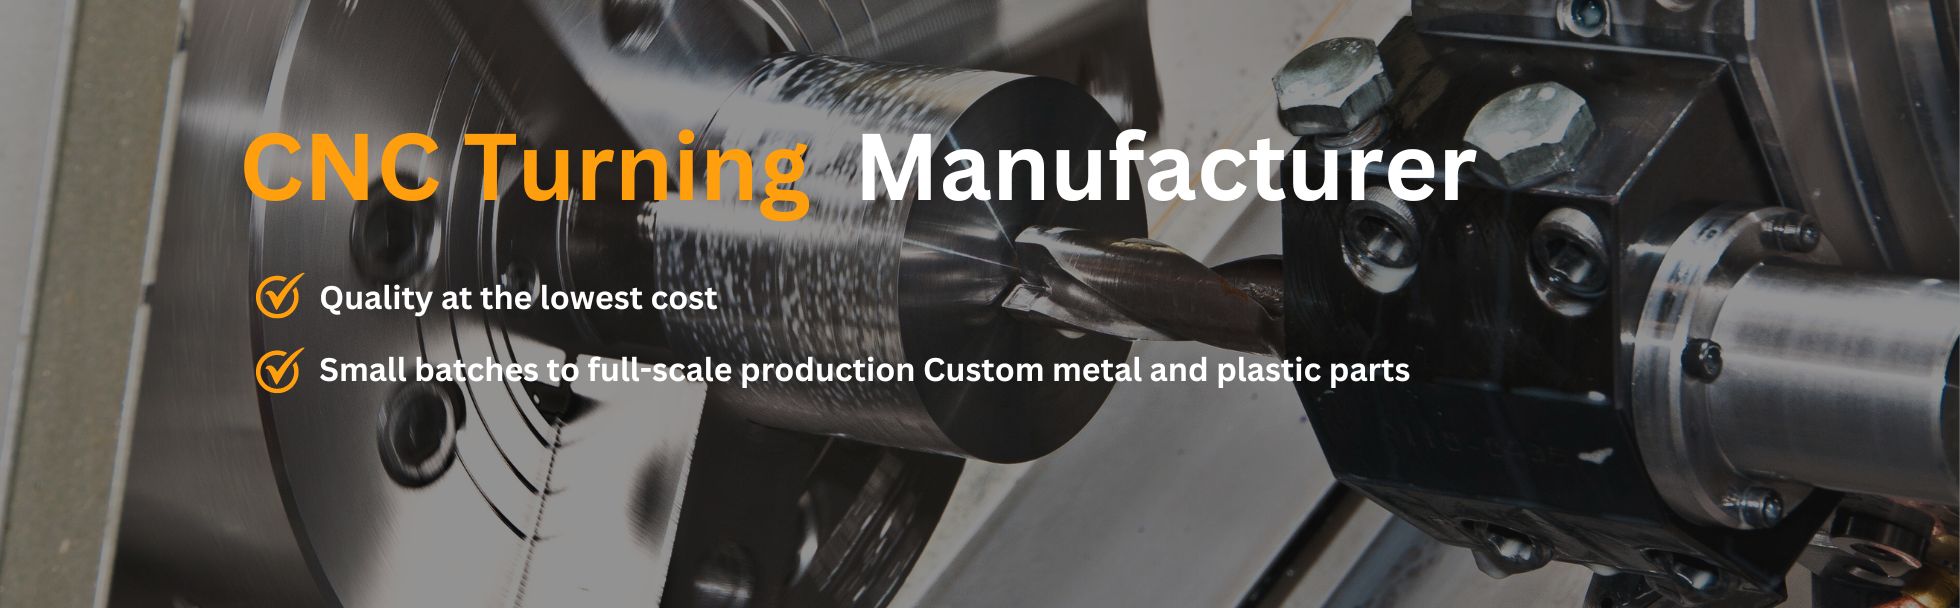 CNC-Turning-Manufacturer